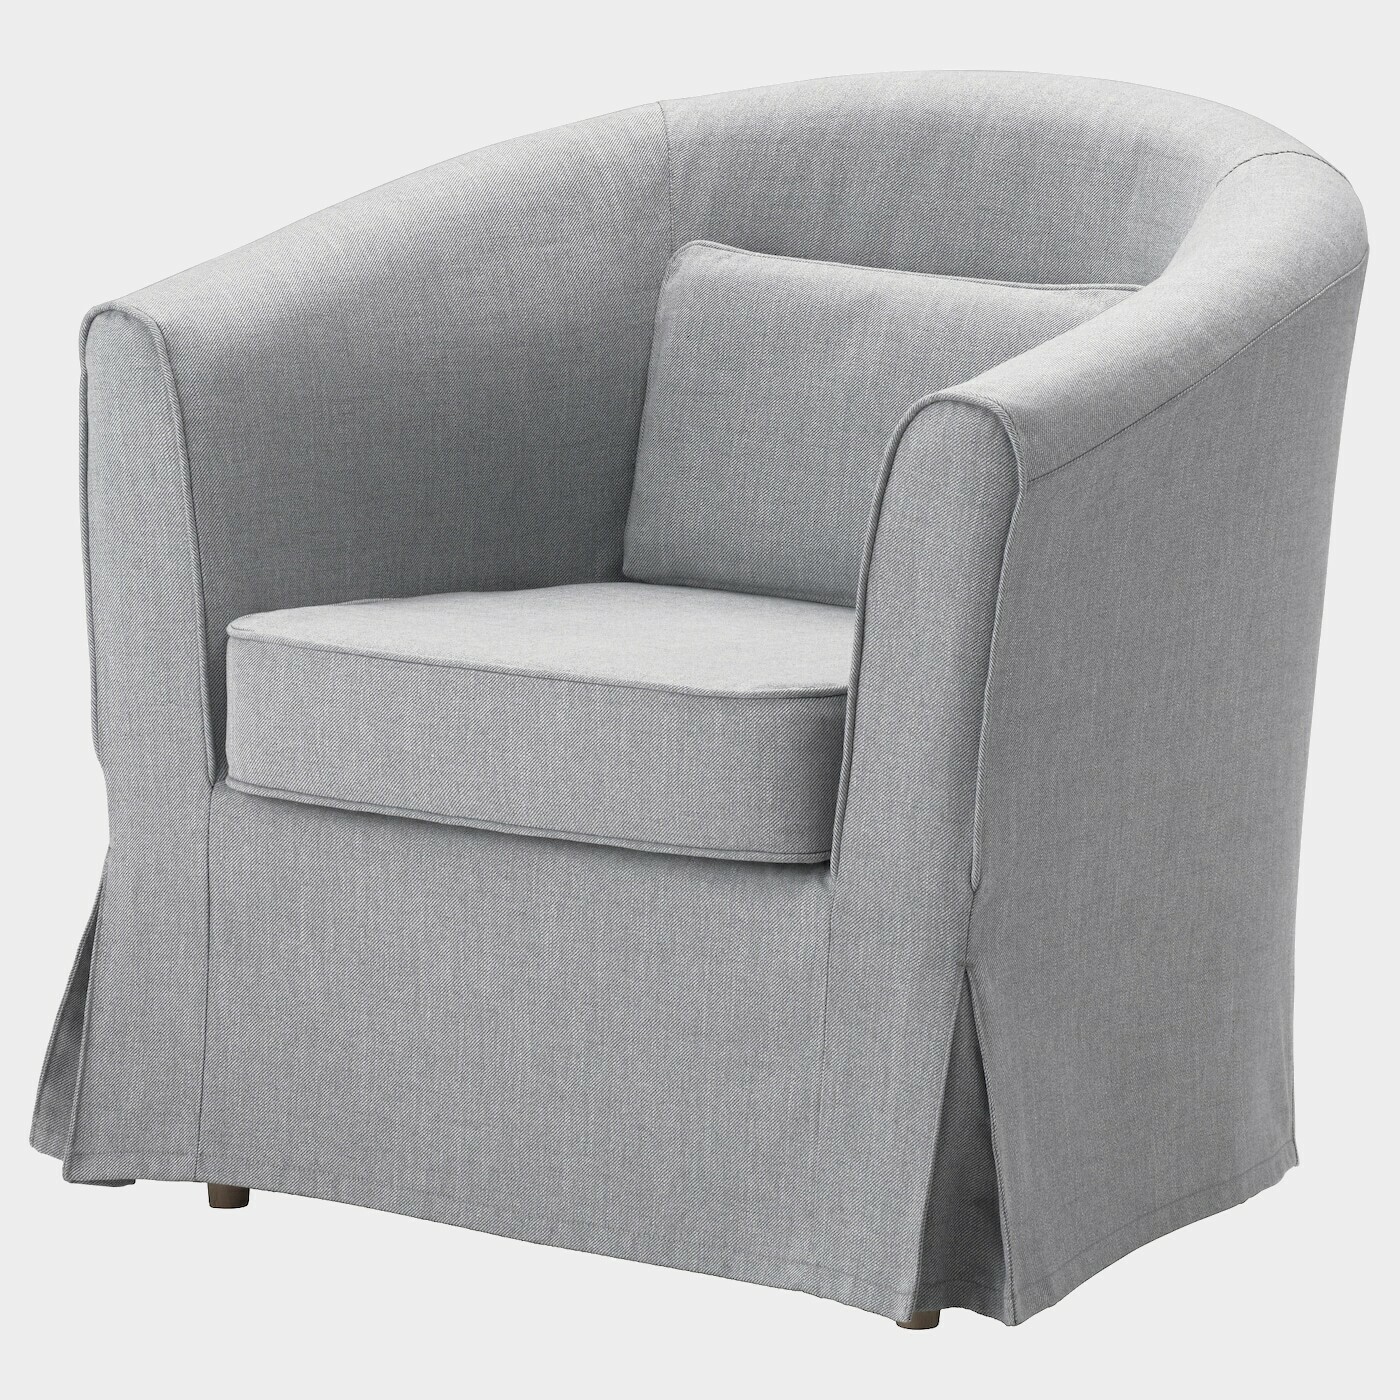 TULLSTA Sessel  - Sessel & Récamieren - Möbel Ideen für dein Zuhause von Home Trends. Möbel Trends von Social Media Influencer für dein Skandi Zuhause.